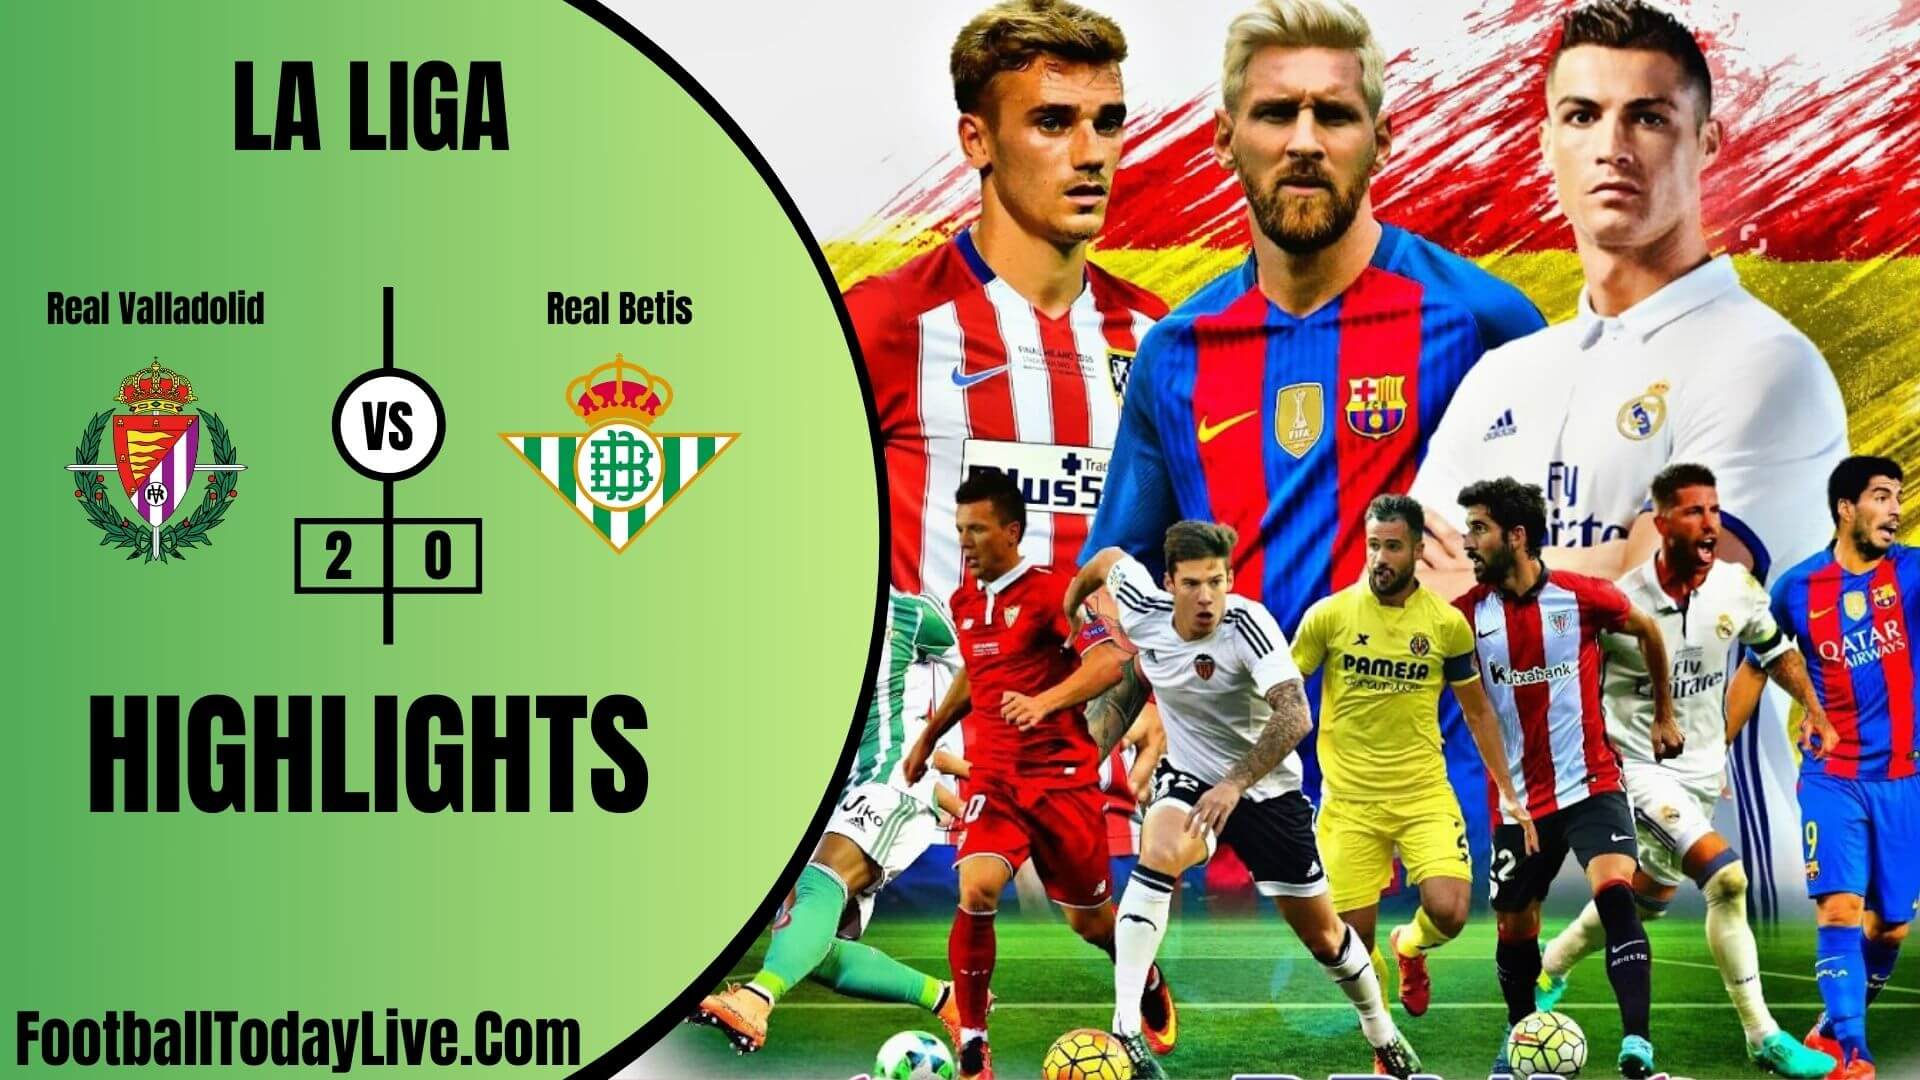 Real Valladolid Vs Real Betis Highlights 2020 La Liga Week 38